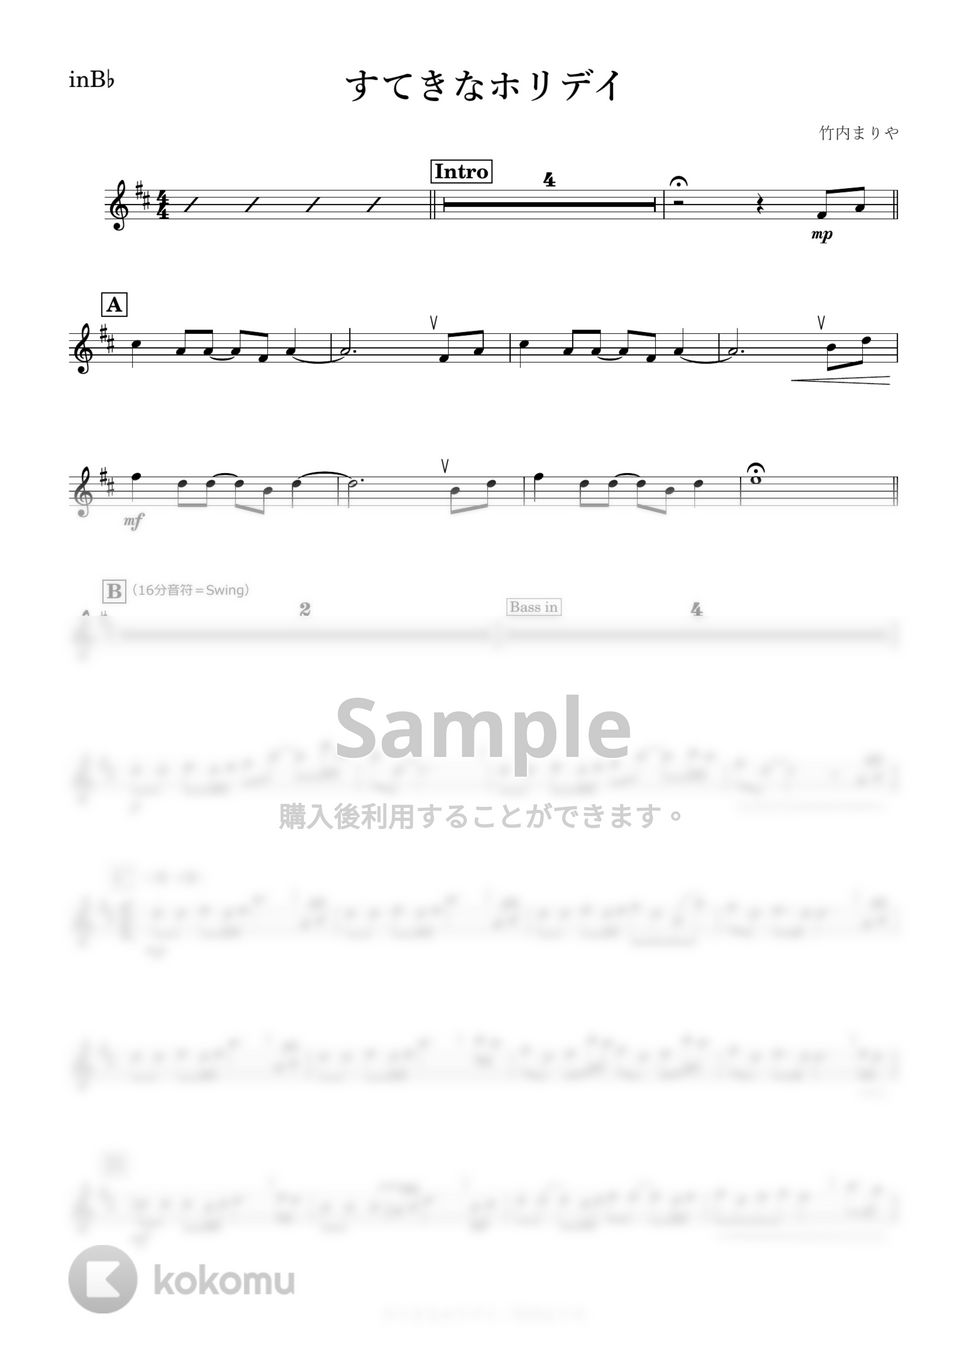 竹内まりや - すてきなホリデイ (B♭) by kanamusic